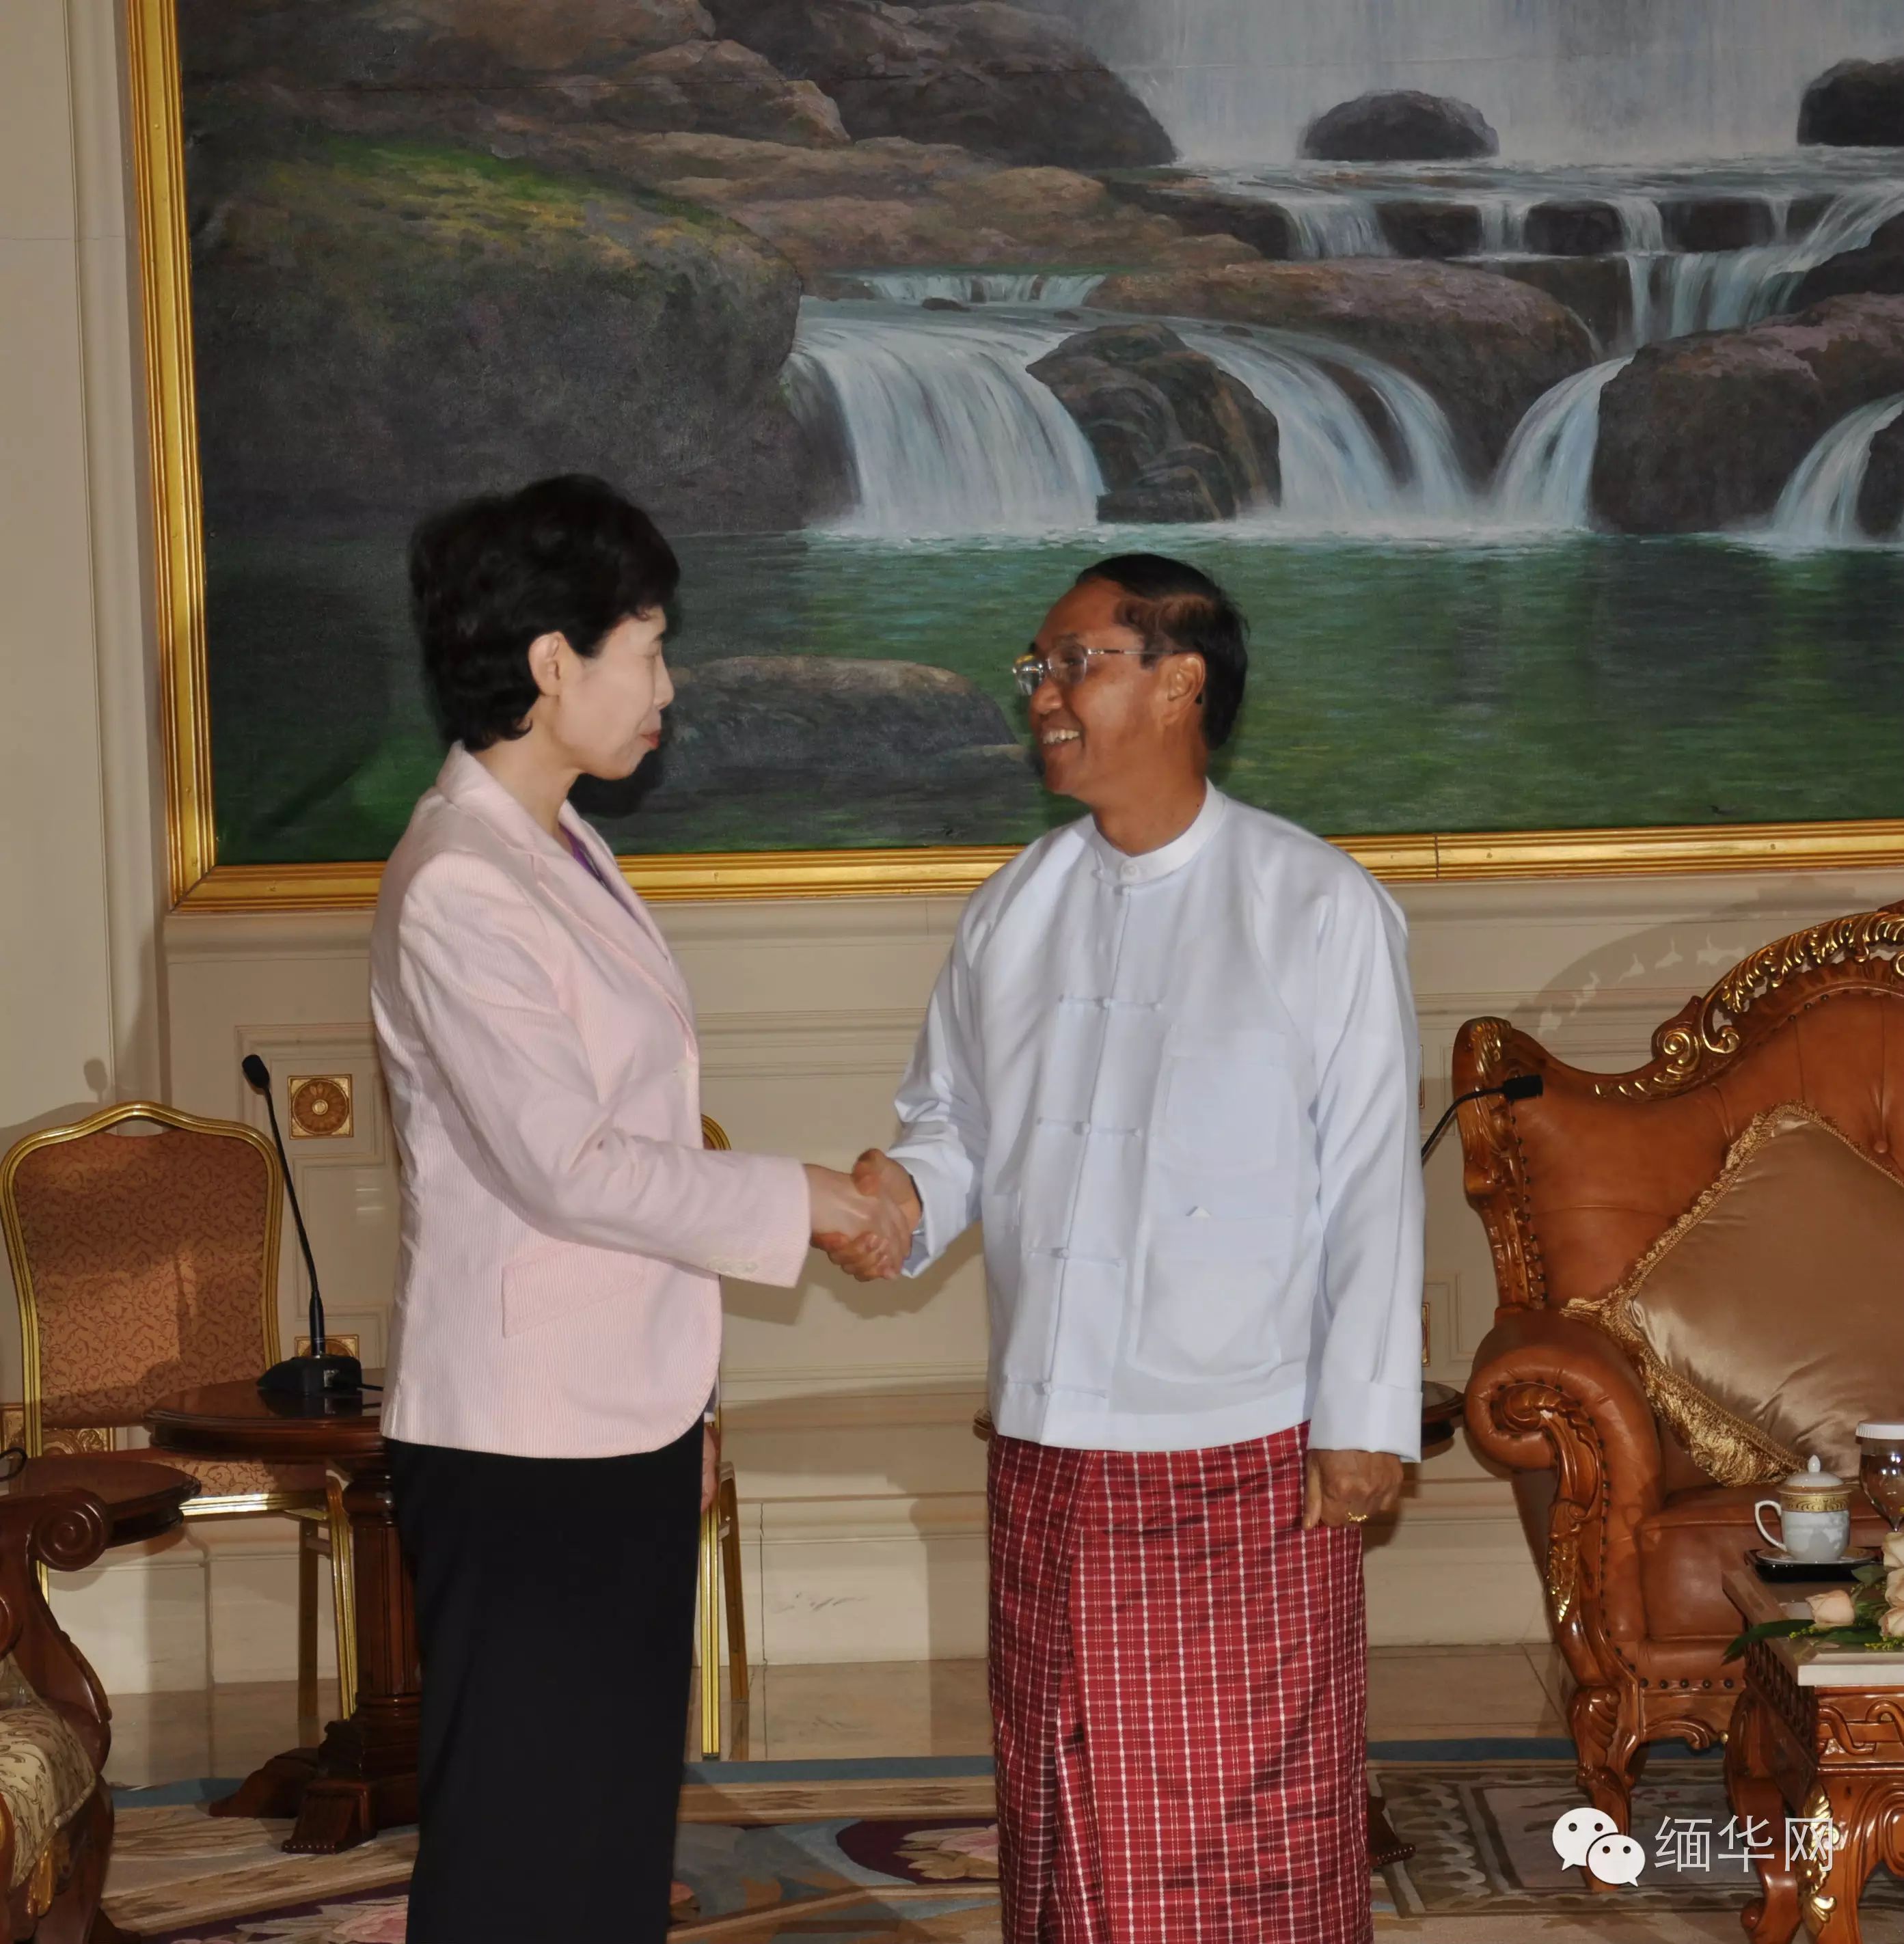 报道,8月25日,缅甸副总统吴敏瑞在总统府会见了中国商务部副部长高燕